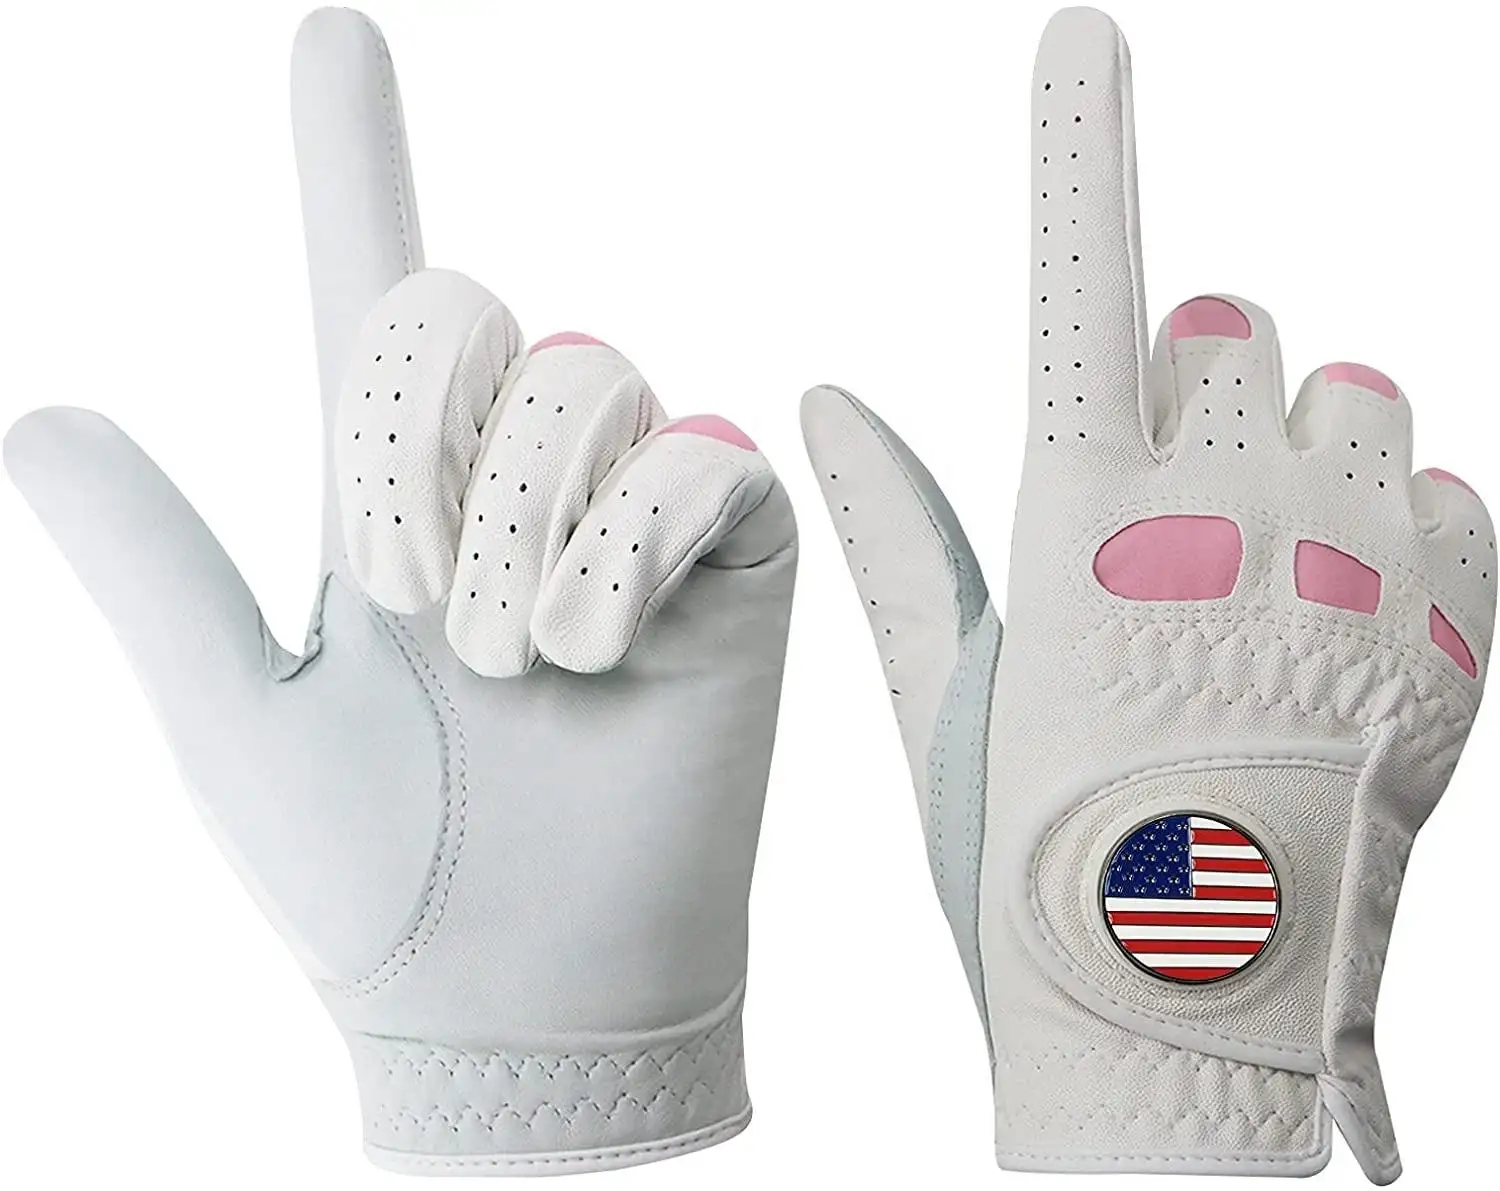 Перчатки для гольфа, оптовая продажа, заводская цена, высокое качество, мягкие белые кожаные перчатки из кожи Каберта, индивидуальный дизайн, цвет логотипа, мужские перчатки для гольфа